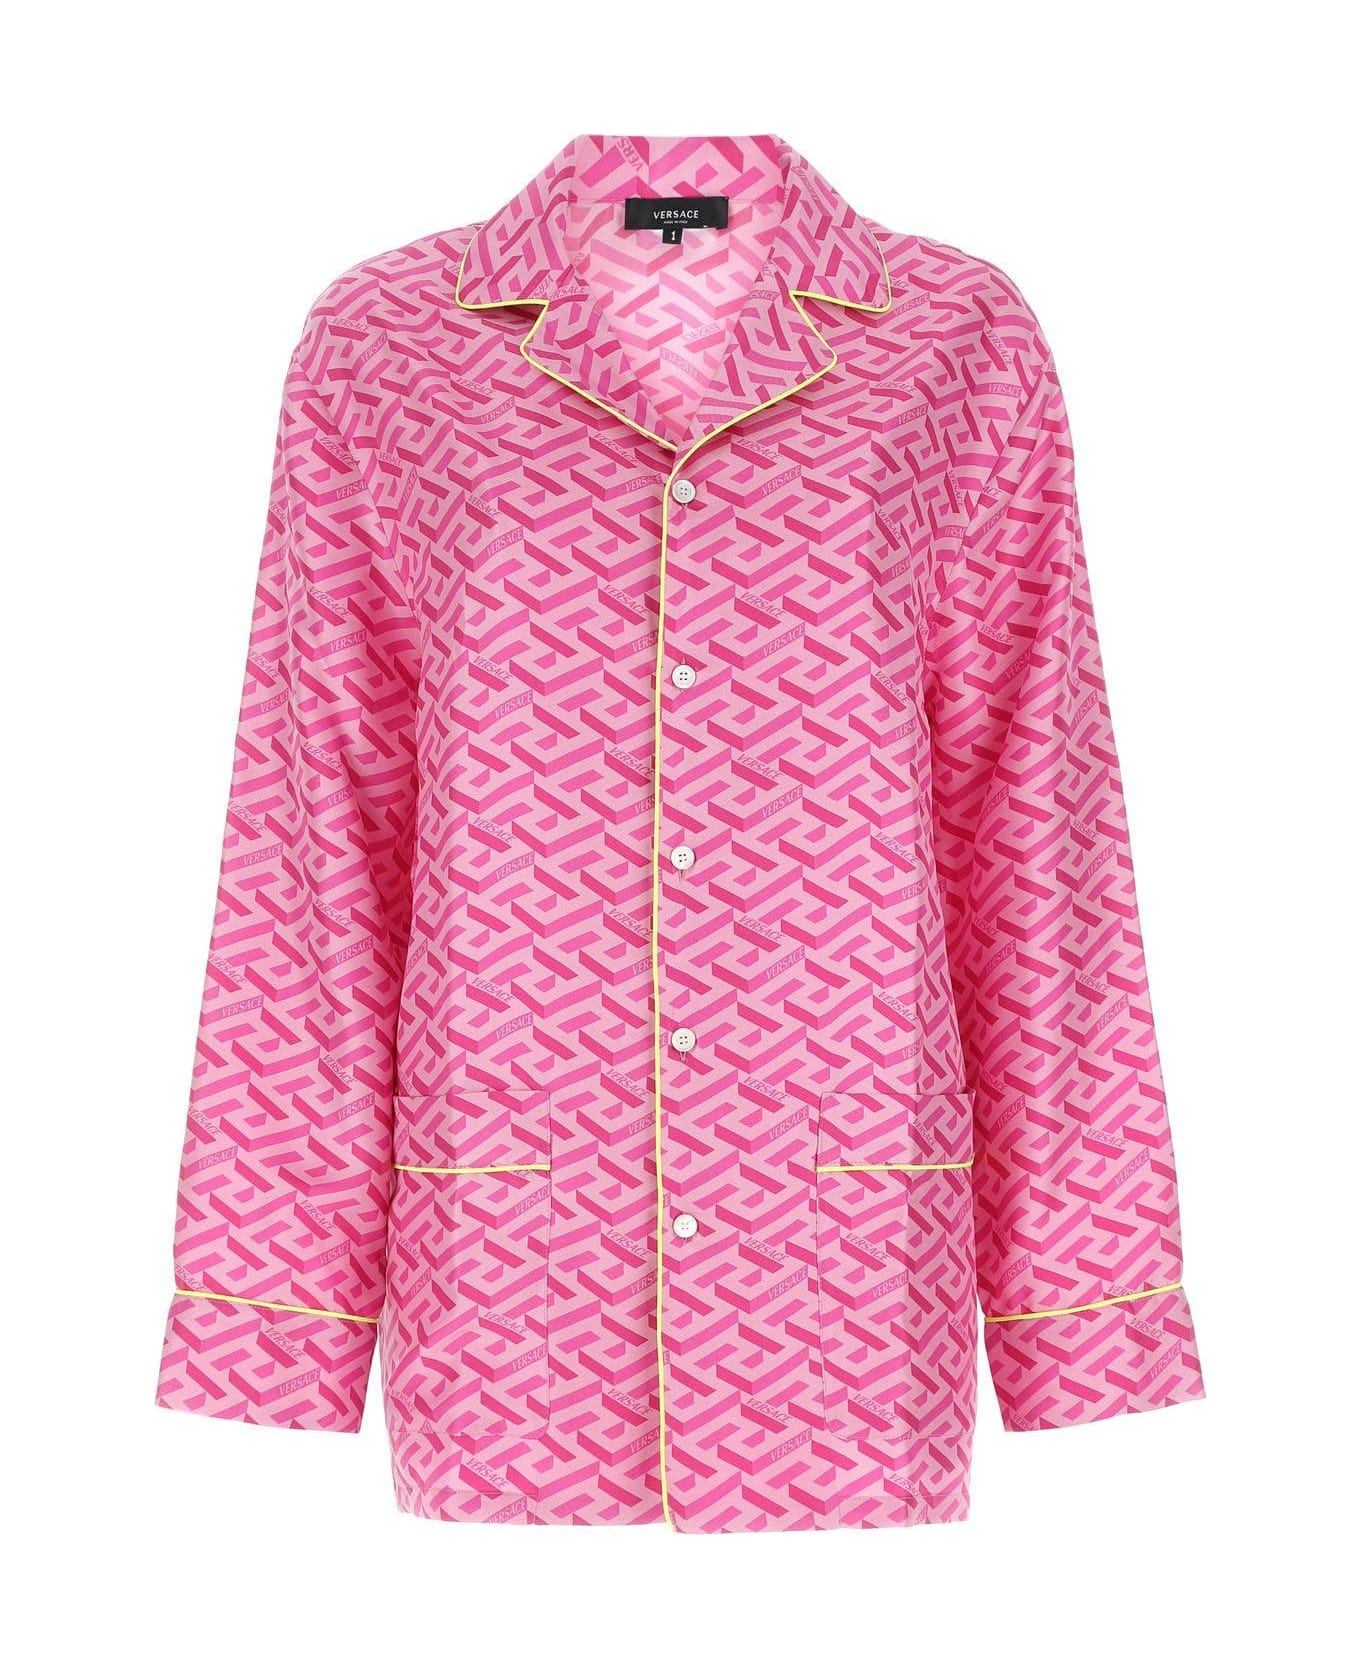 Versace Printed Satin Pijama Shirt - PINK